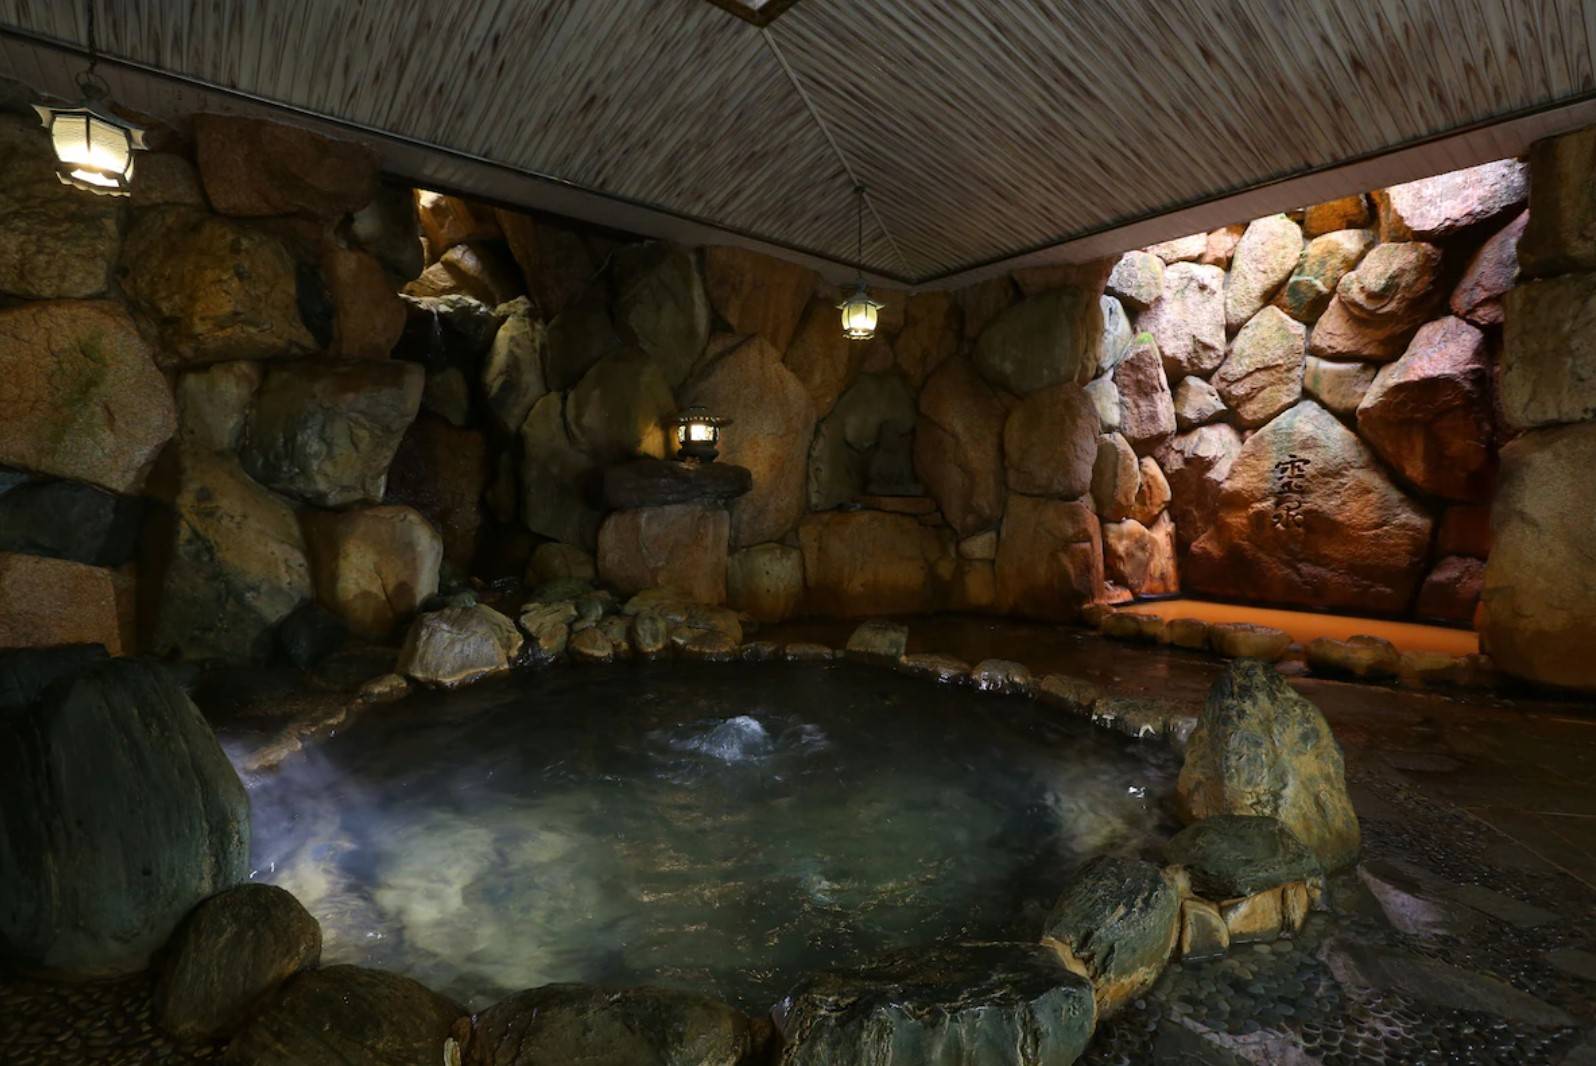 有馬溫泉酒店 旅館擁有一被視為靈驗的「靈泉」的岩風呂